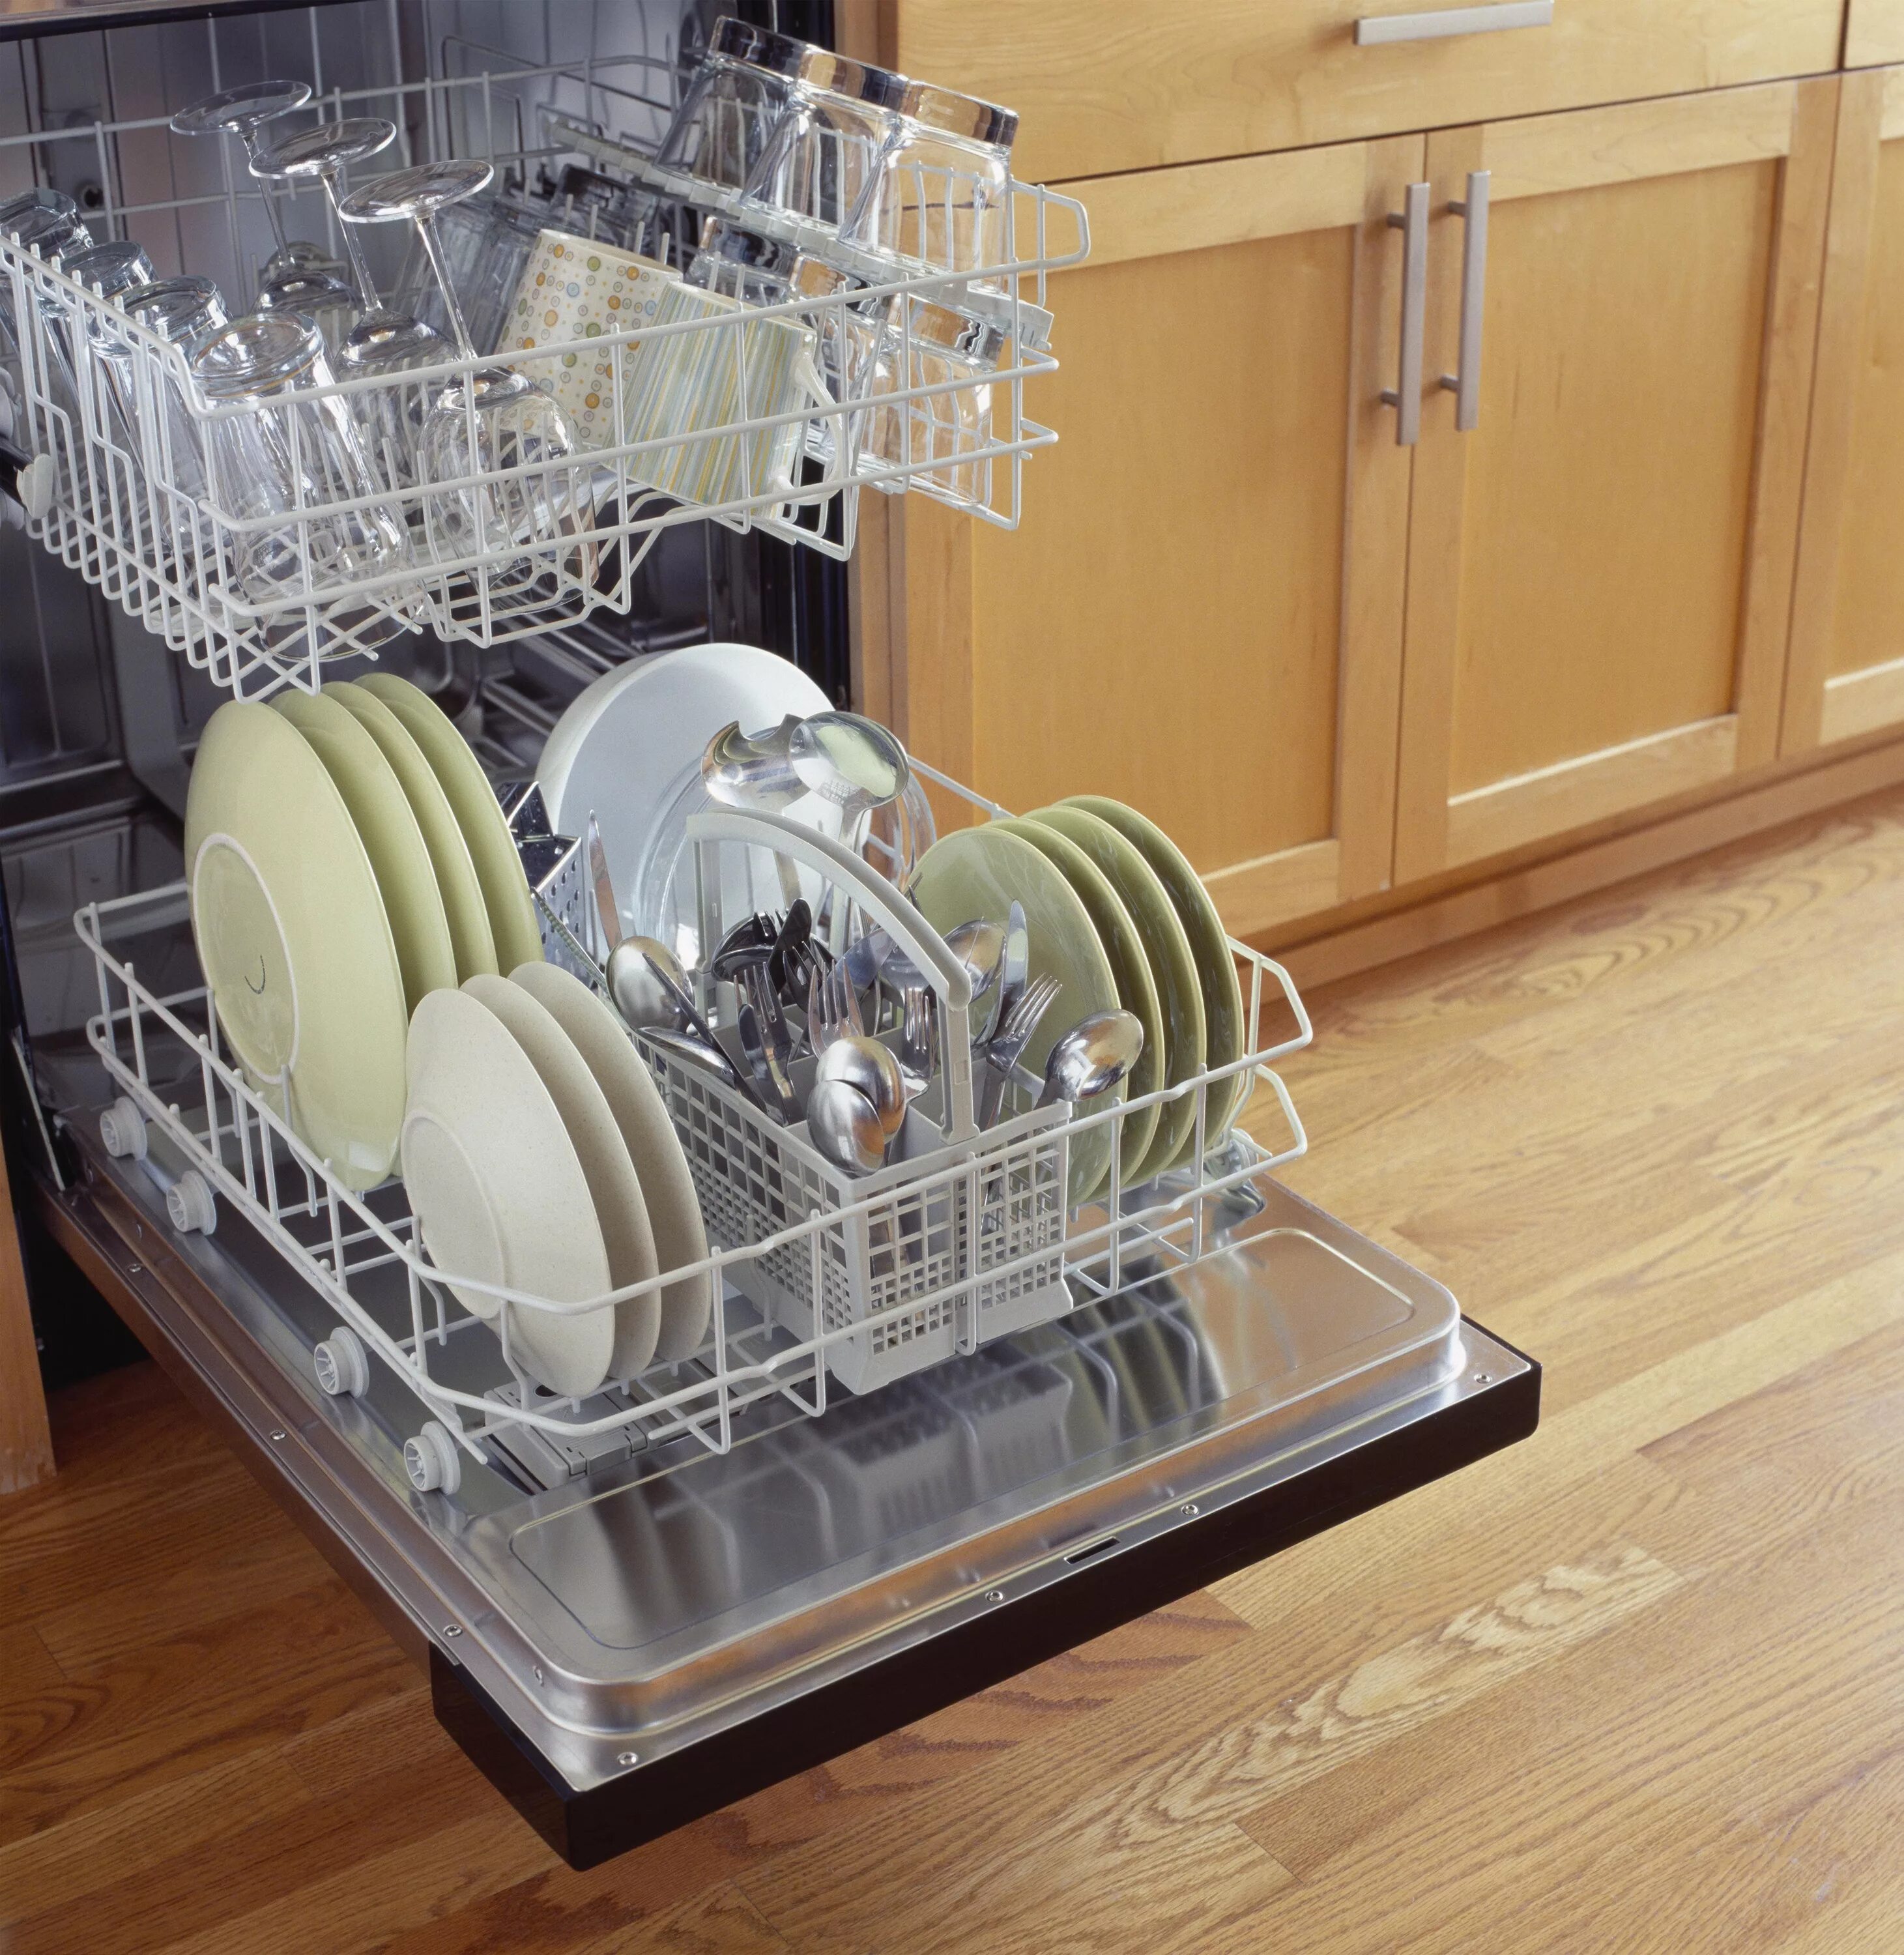 Посуда в посудомойке. Расстановка посуды в посудомоечной машине. Укладка посуды в посудомоечной машине. Правильная загрузка посуды в посудомоечную машину.